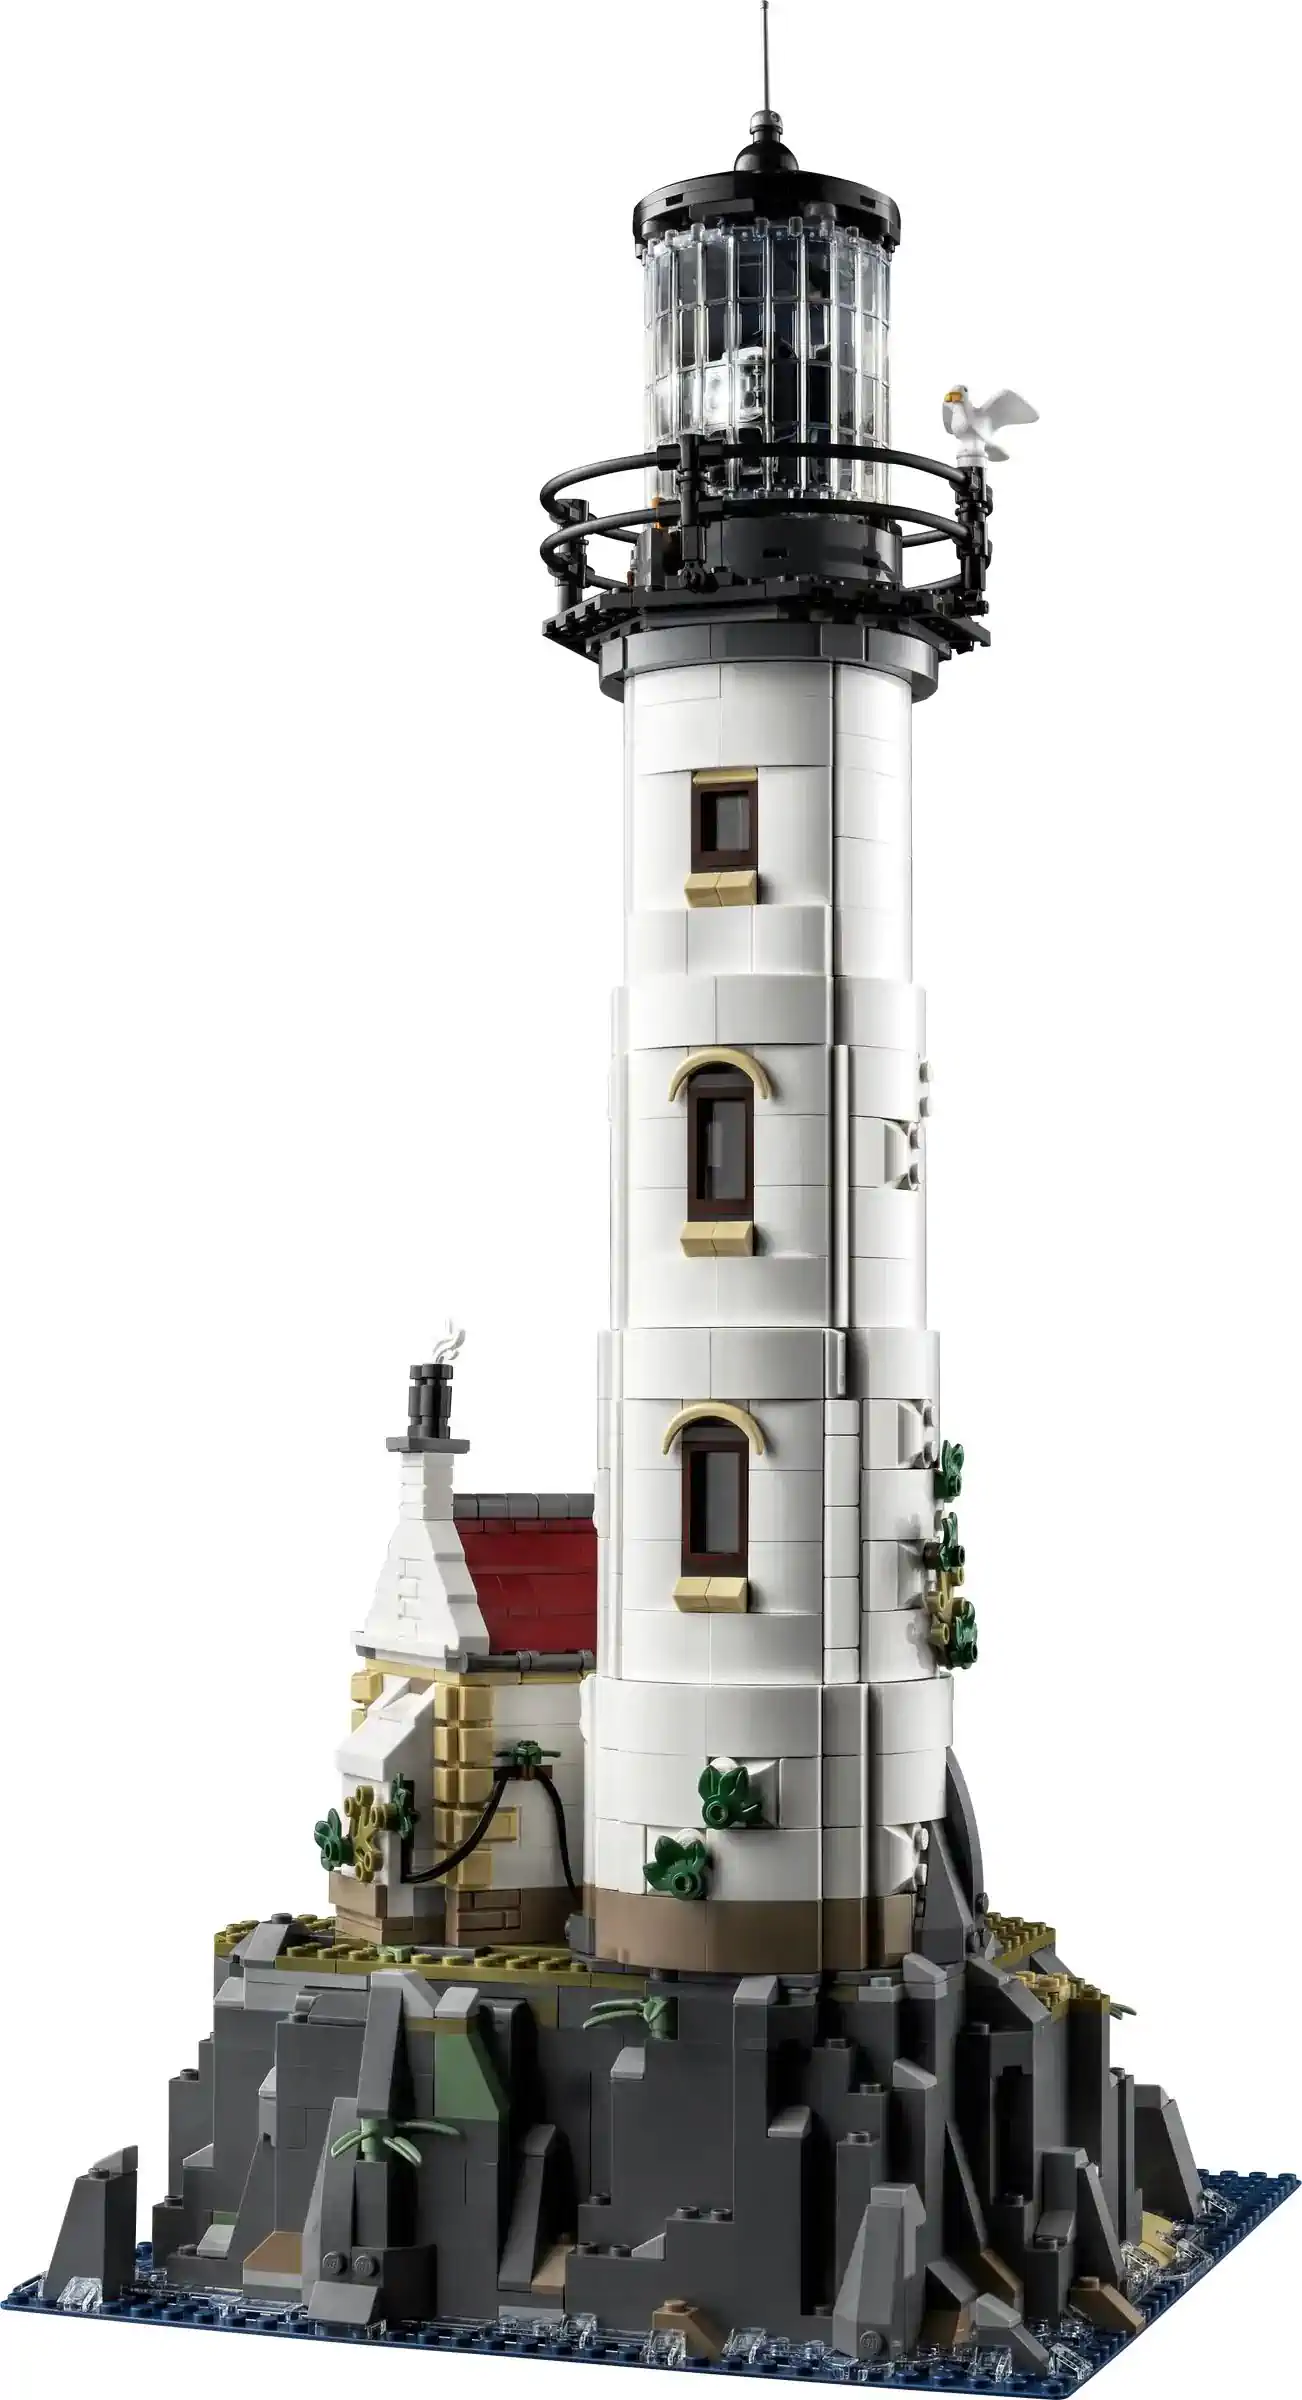 LEGO IDEAS Set "Motorisierter Leuchtturm" (21335)